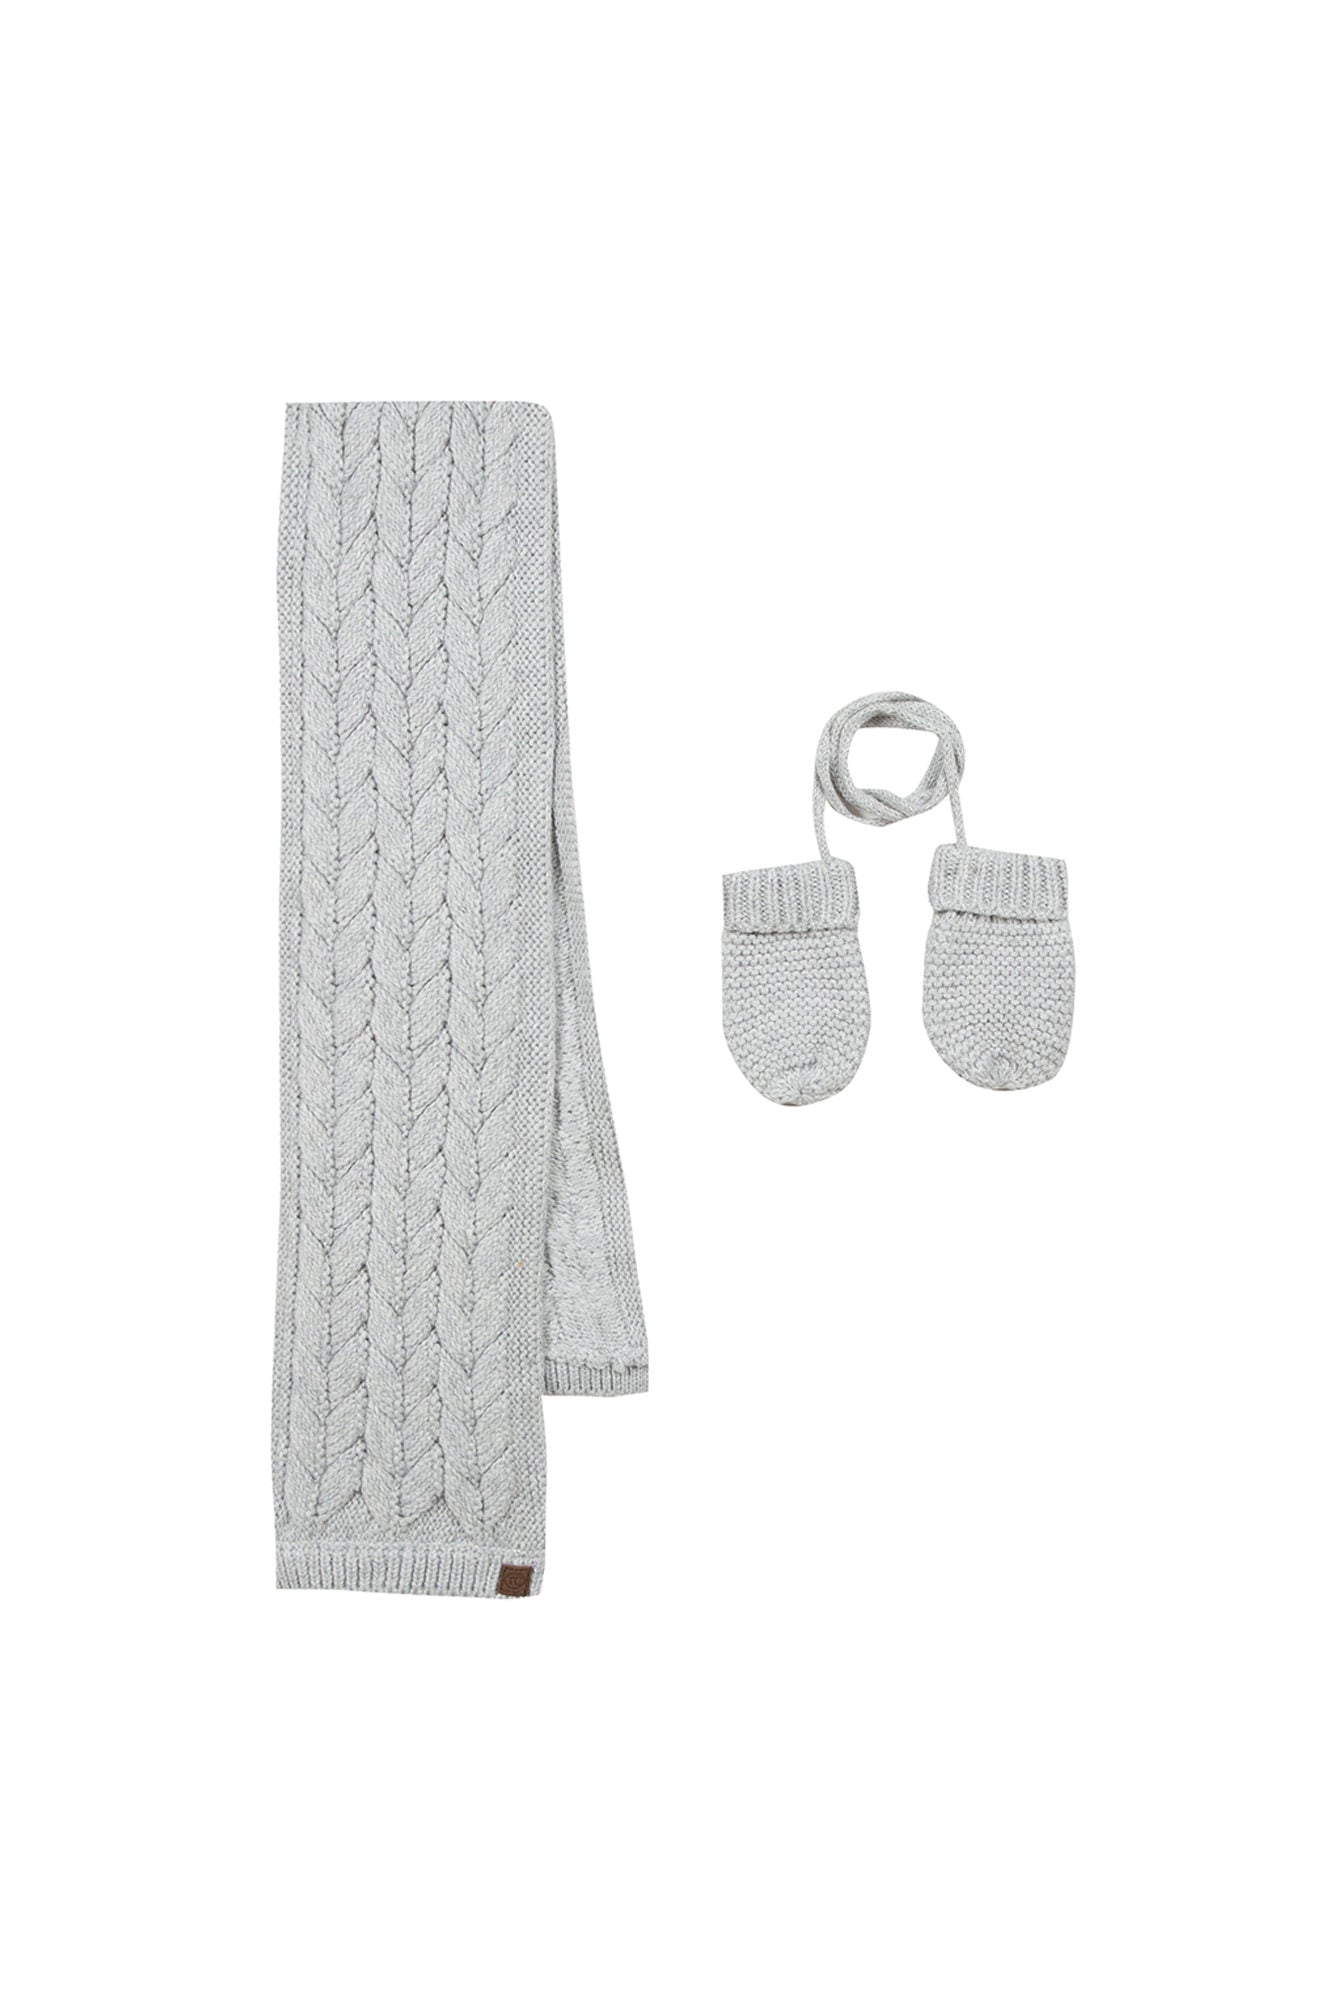 Moufles tricot bébé unisexe gris 0-2 ans